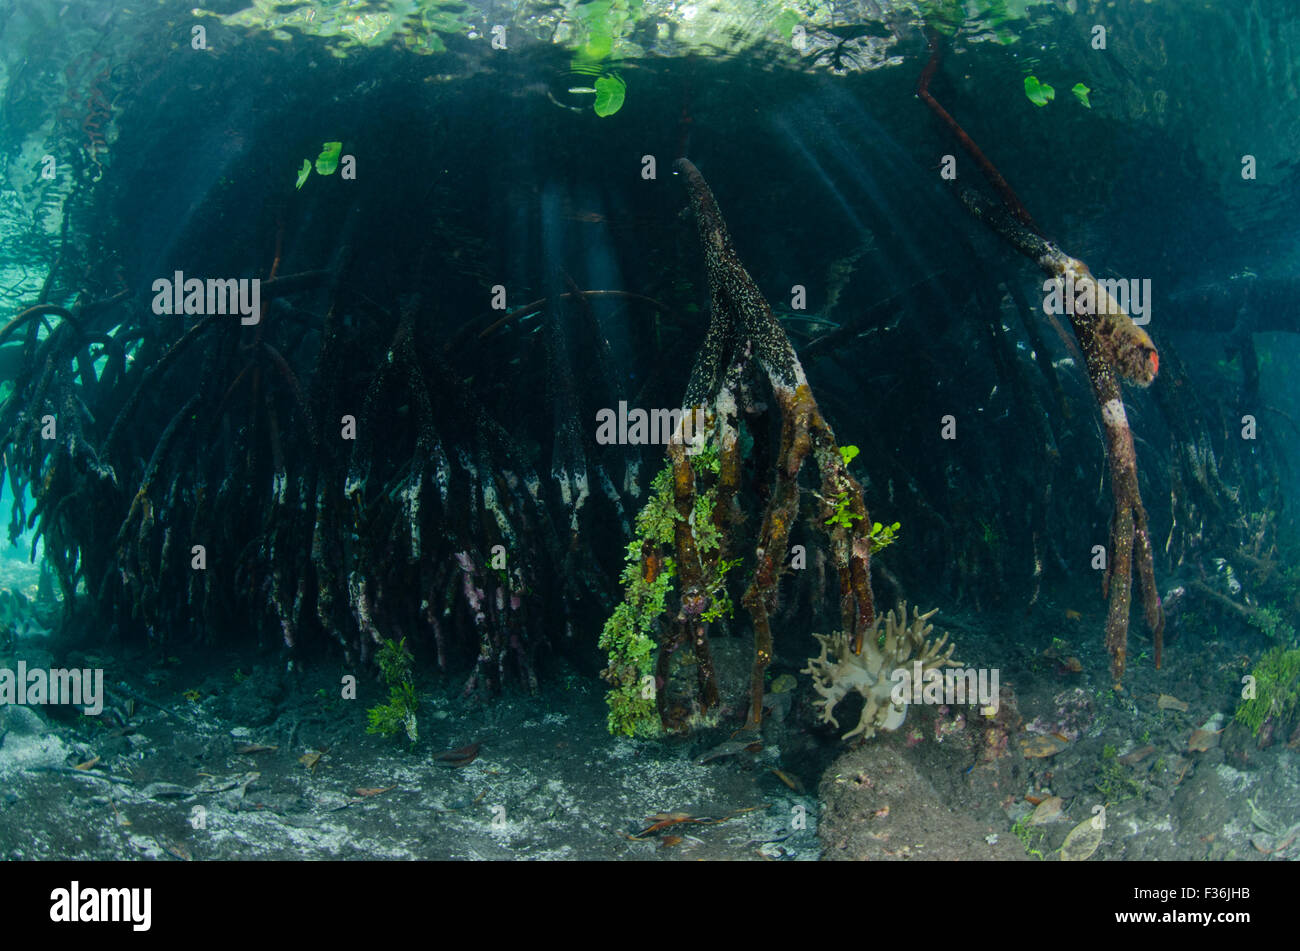 Racines de mangroves couvertes de la croissance dans l'eau claire, l'Île Yangeffo, GAM, Raja Ampat, Indonésie, l'Océan Pacifique Banque D'Images